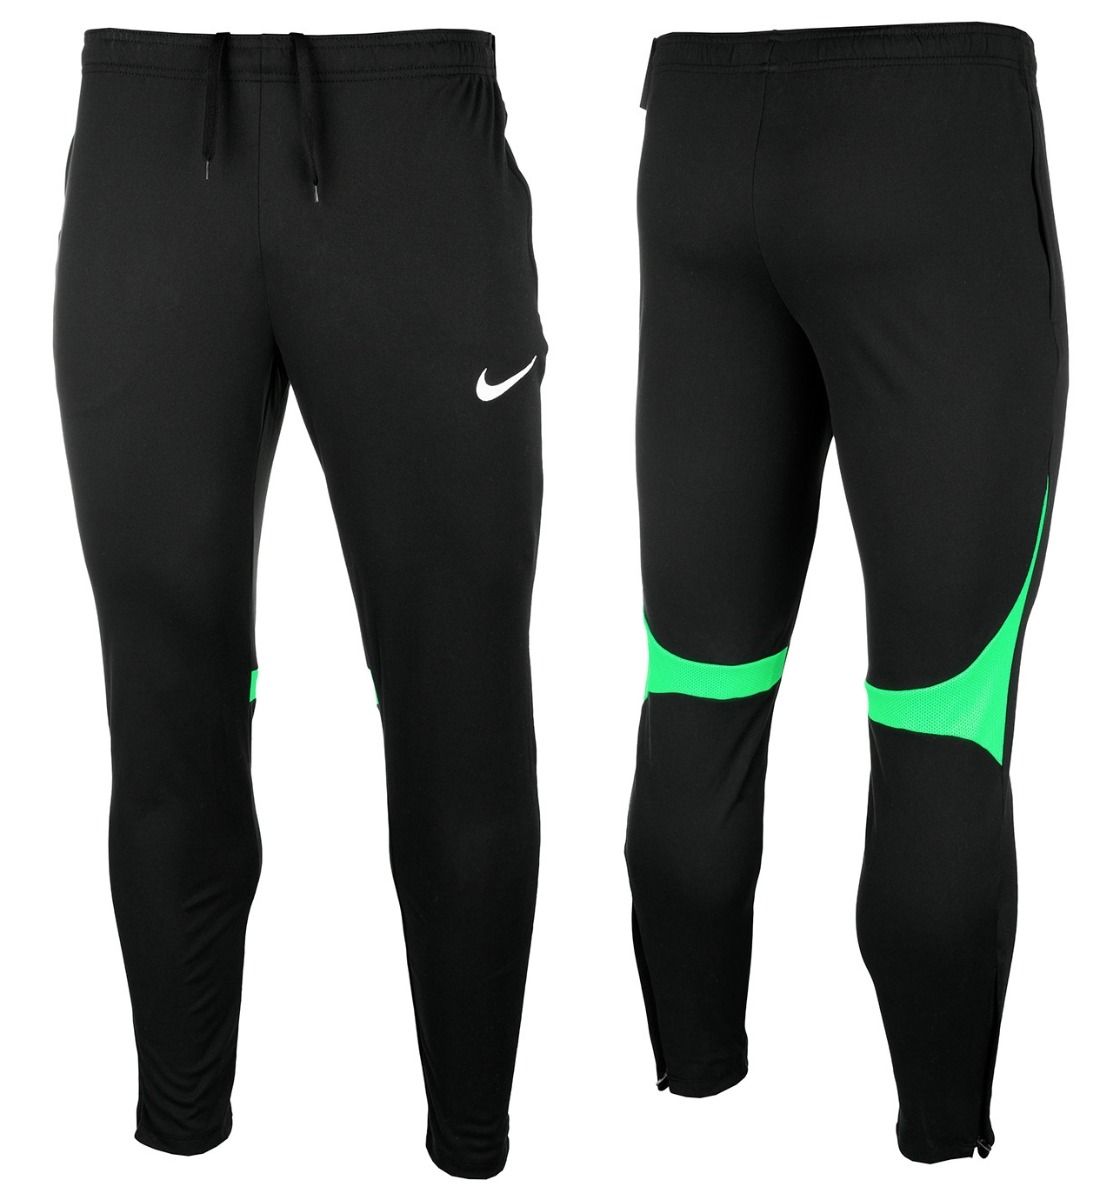 Nike Spodnie męskie Dri-Fit Academy Pro Pant Kpz DH9240 011